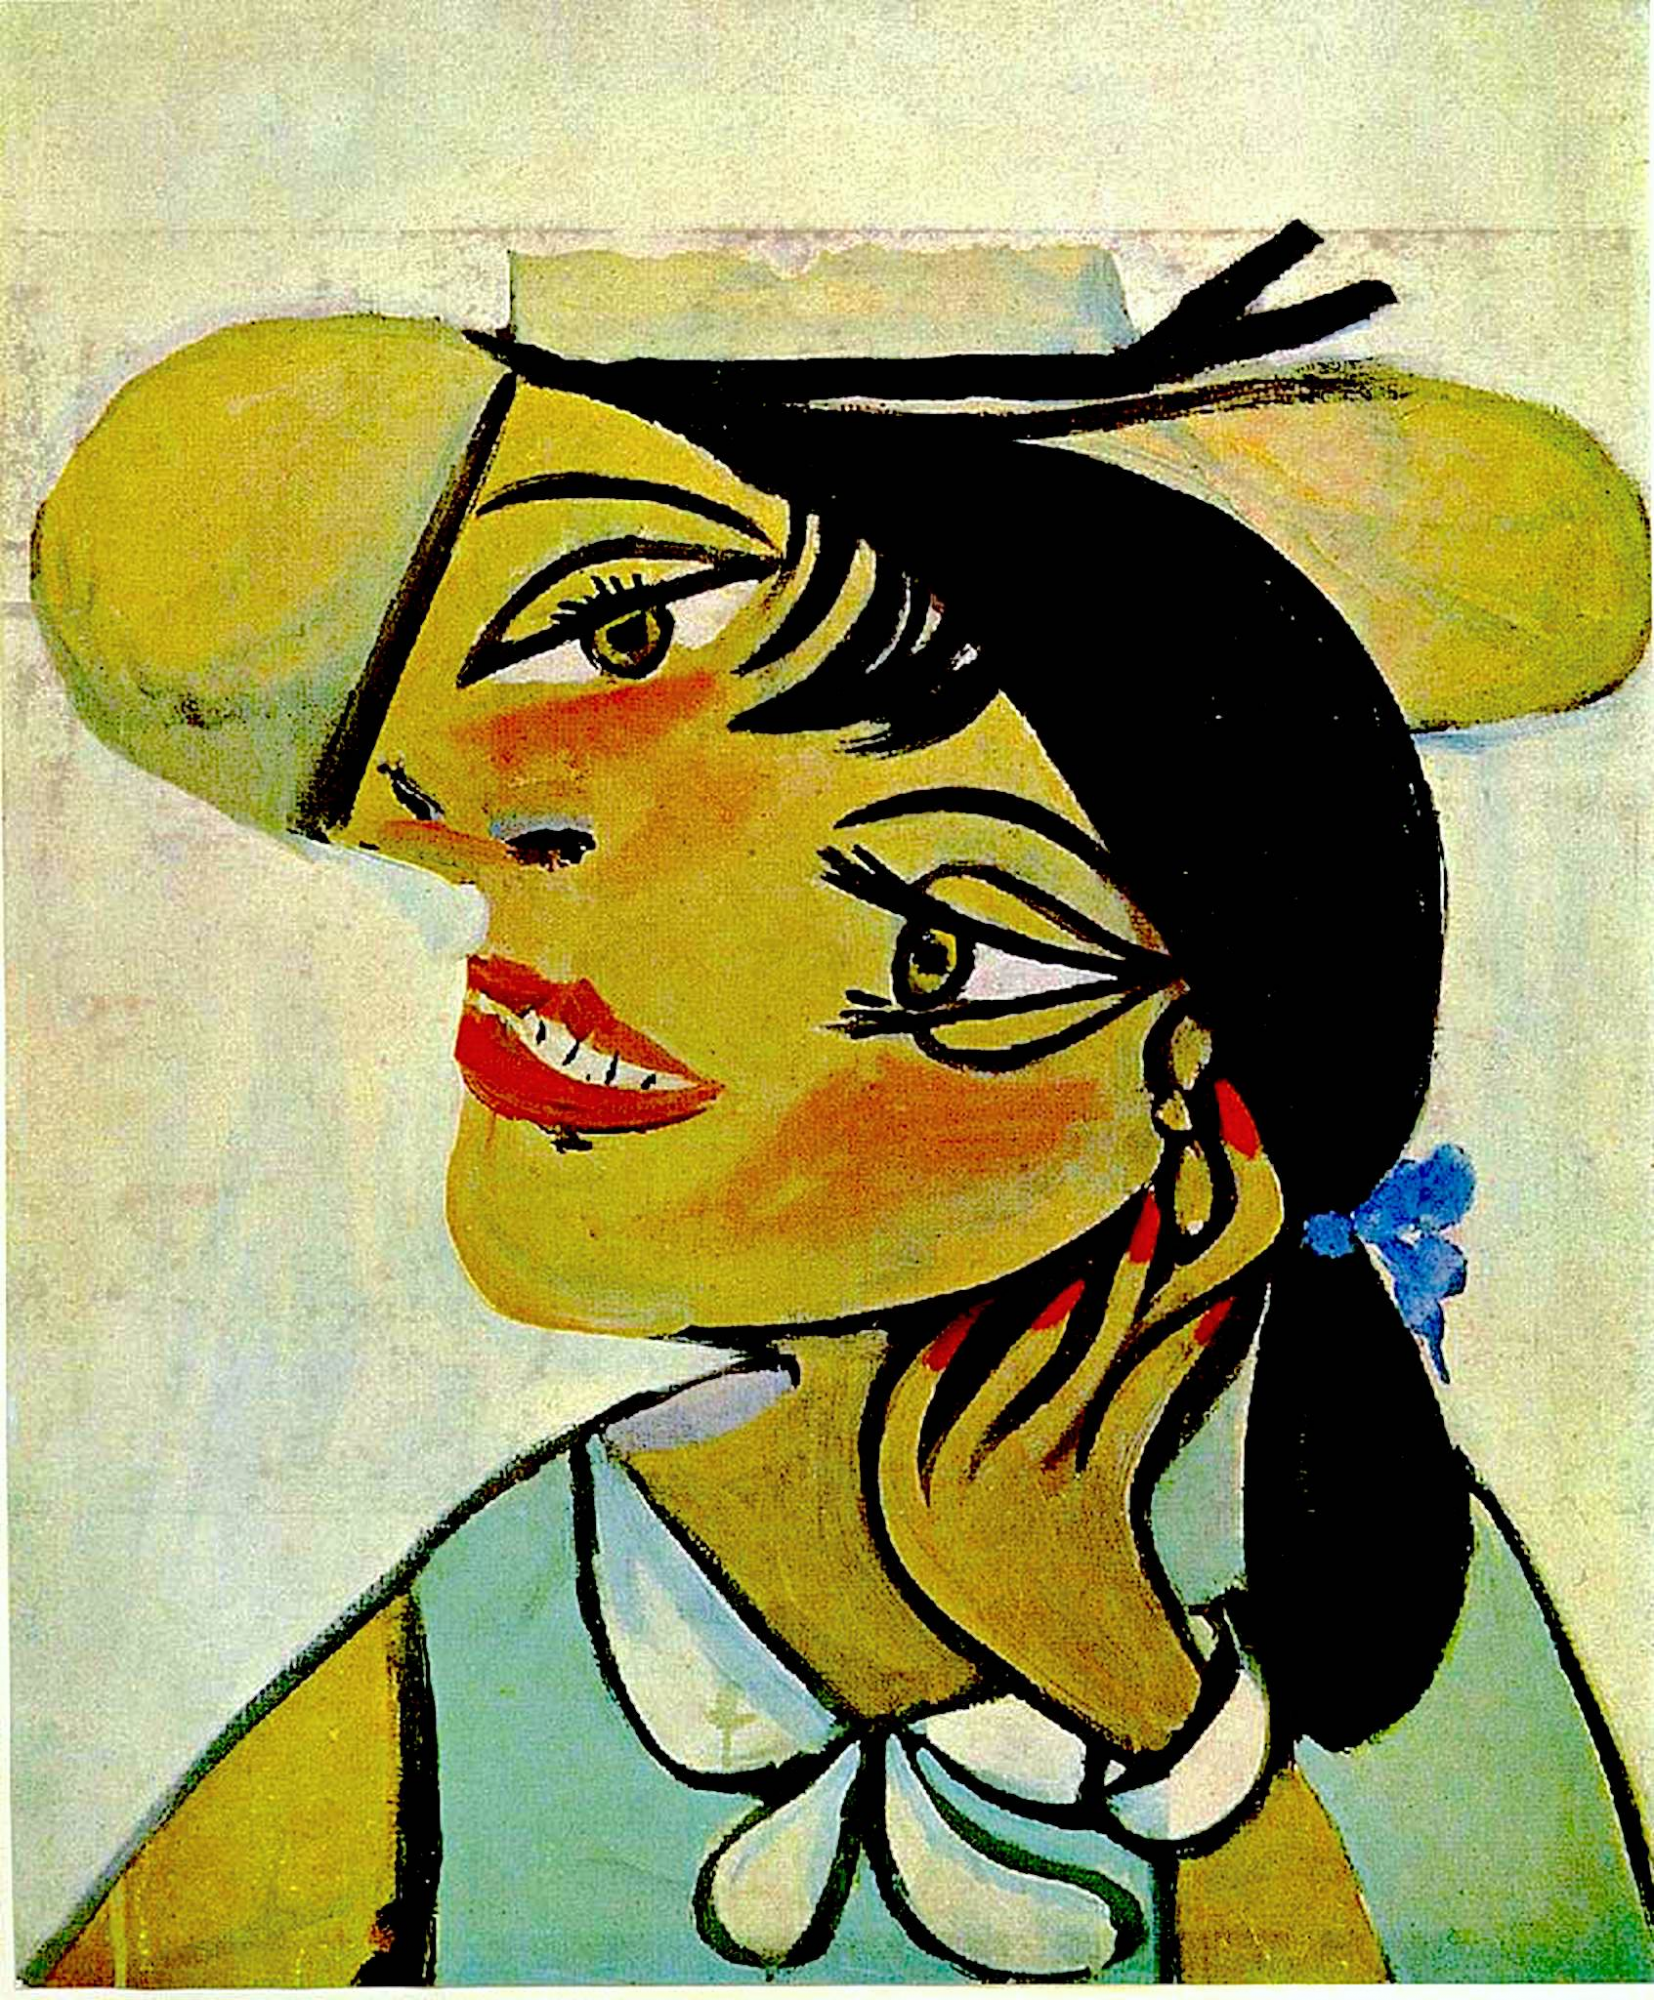 ajo Disfraces As Mujer con cuello de armiño (Olga) - Pablo Picasso - Historia Arte (HA!)